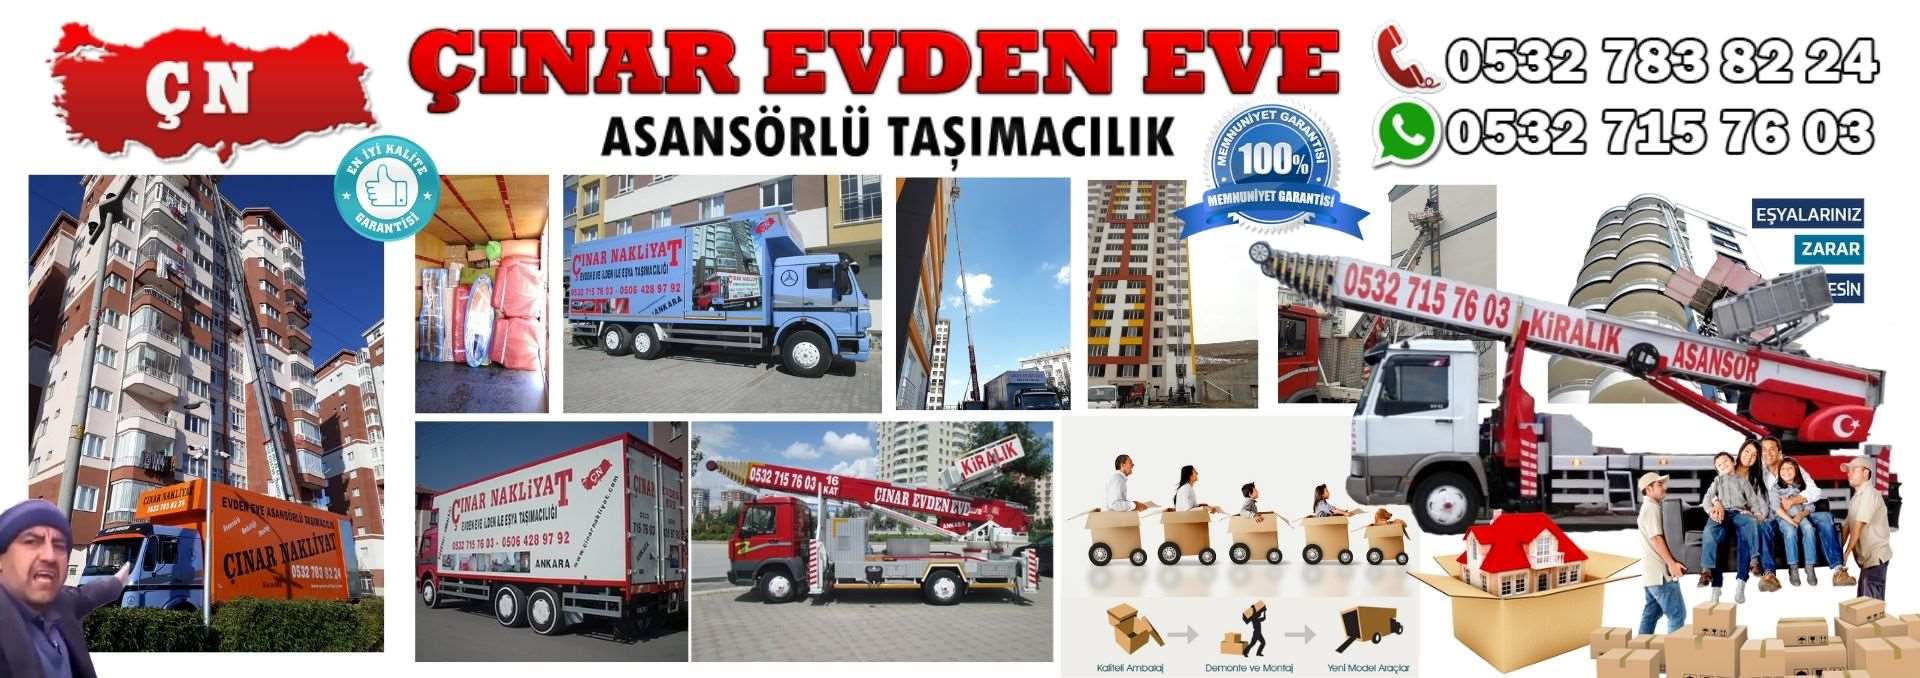 Ankara Etimesgut Evden Eve Asansörlü Ev Eşyası Taşıma 0532 715 76 03